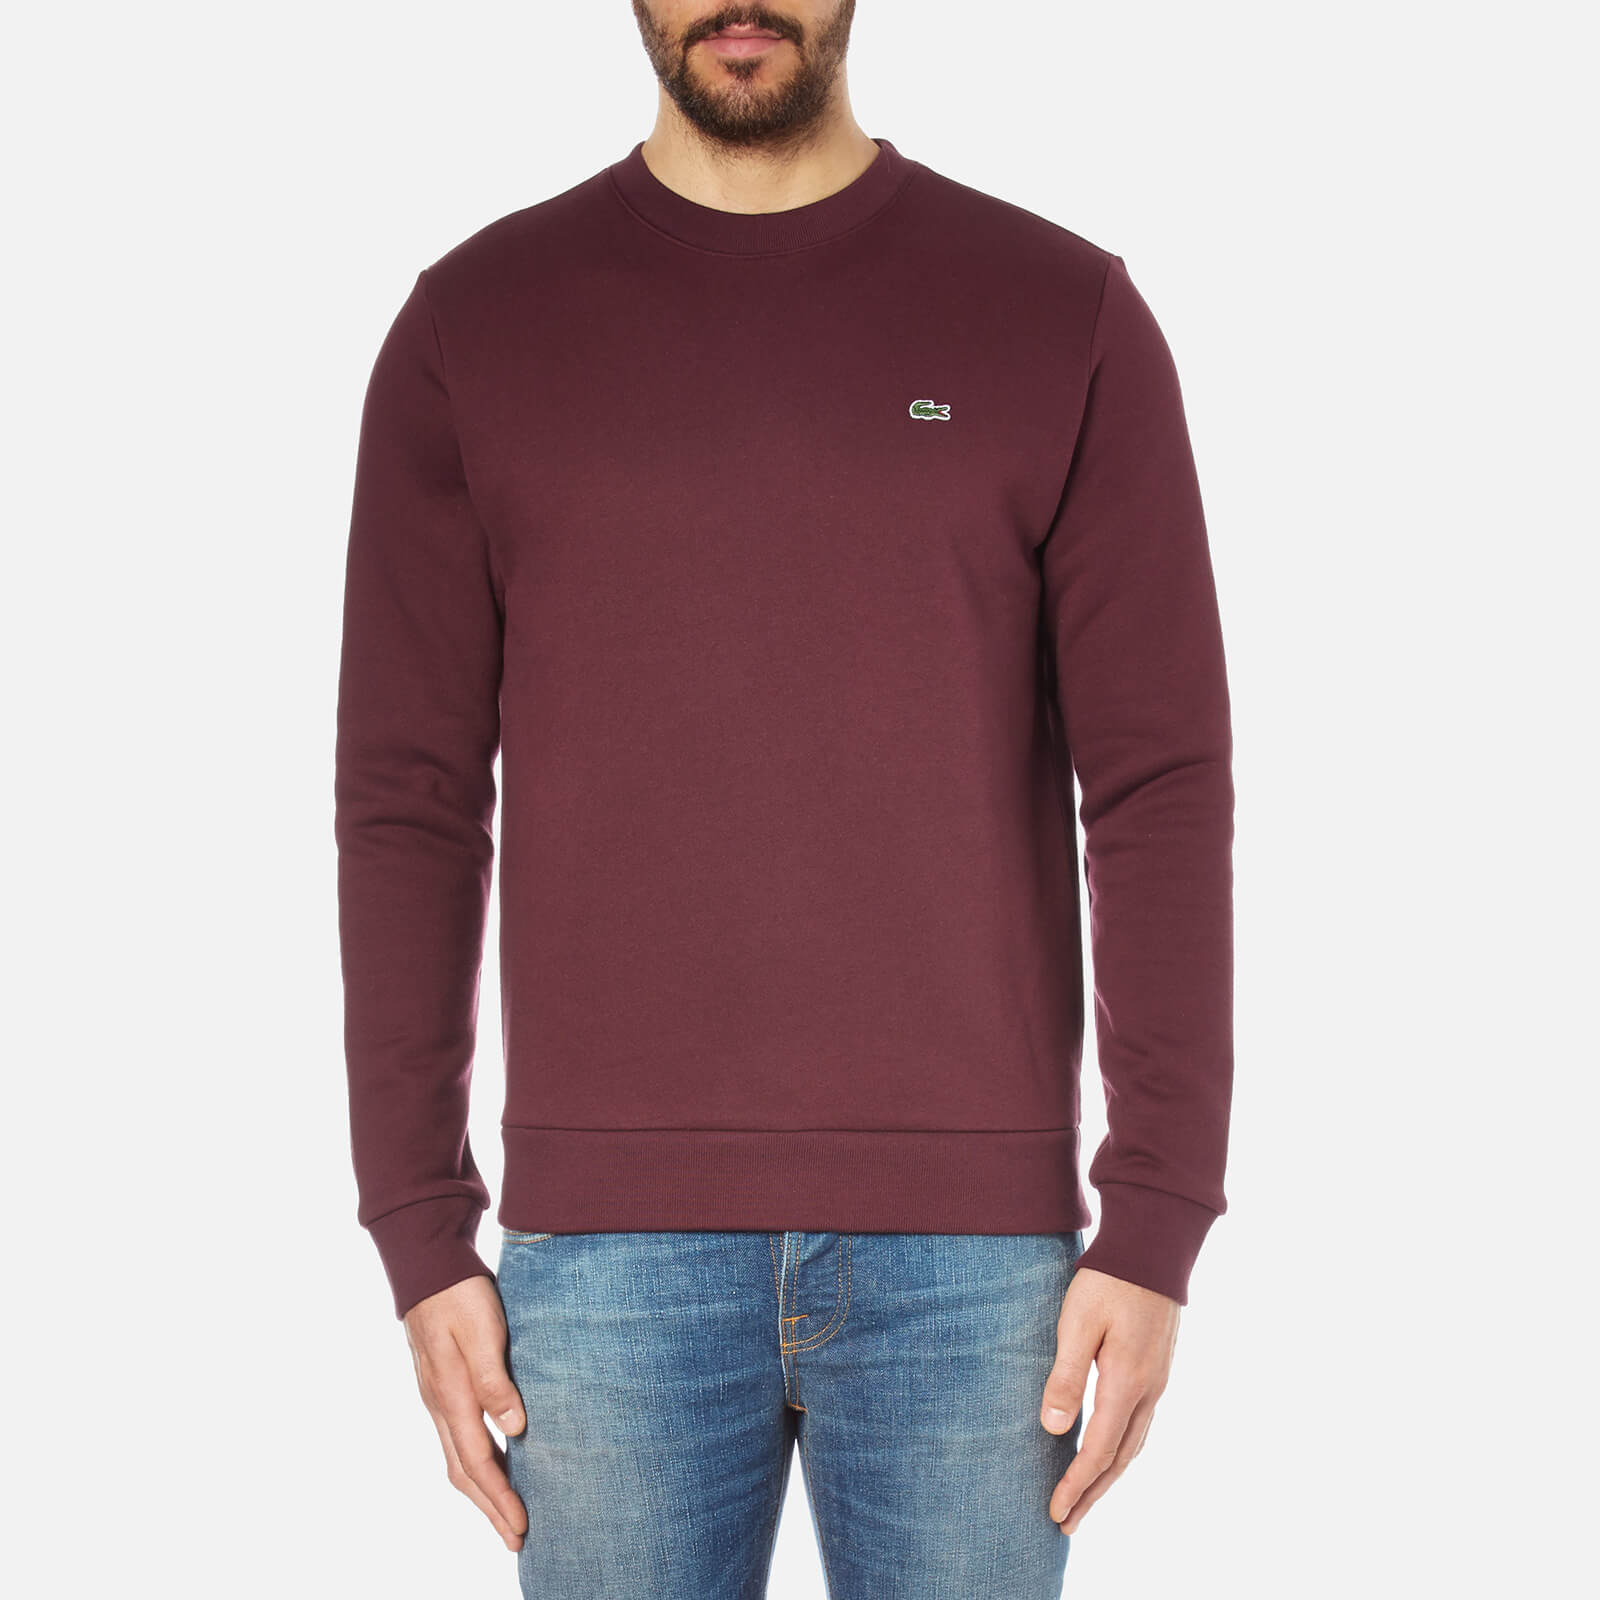 lacoste burgundy sweatshirt